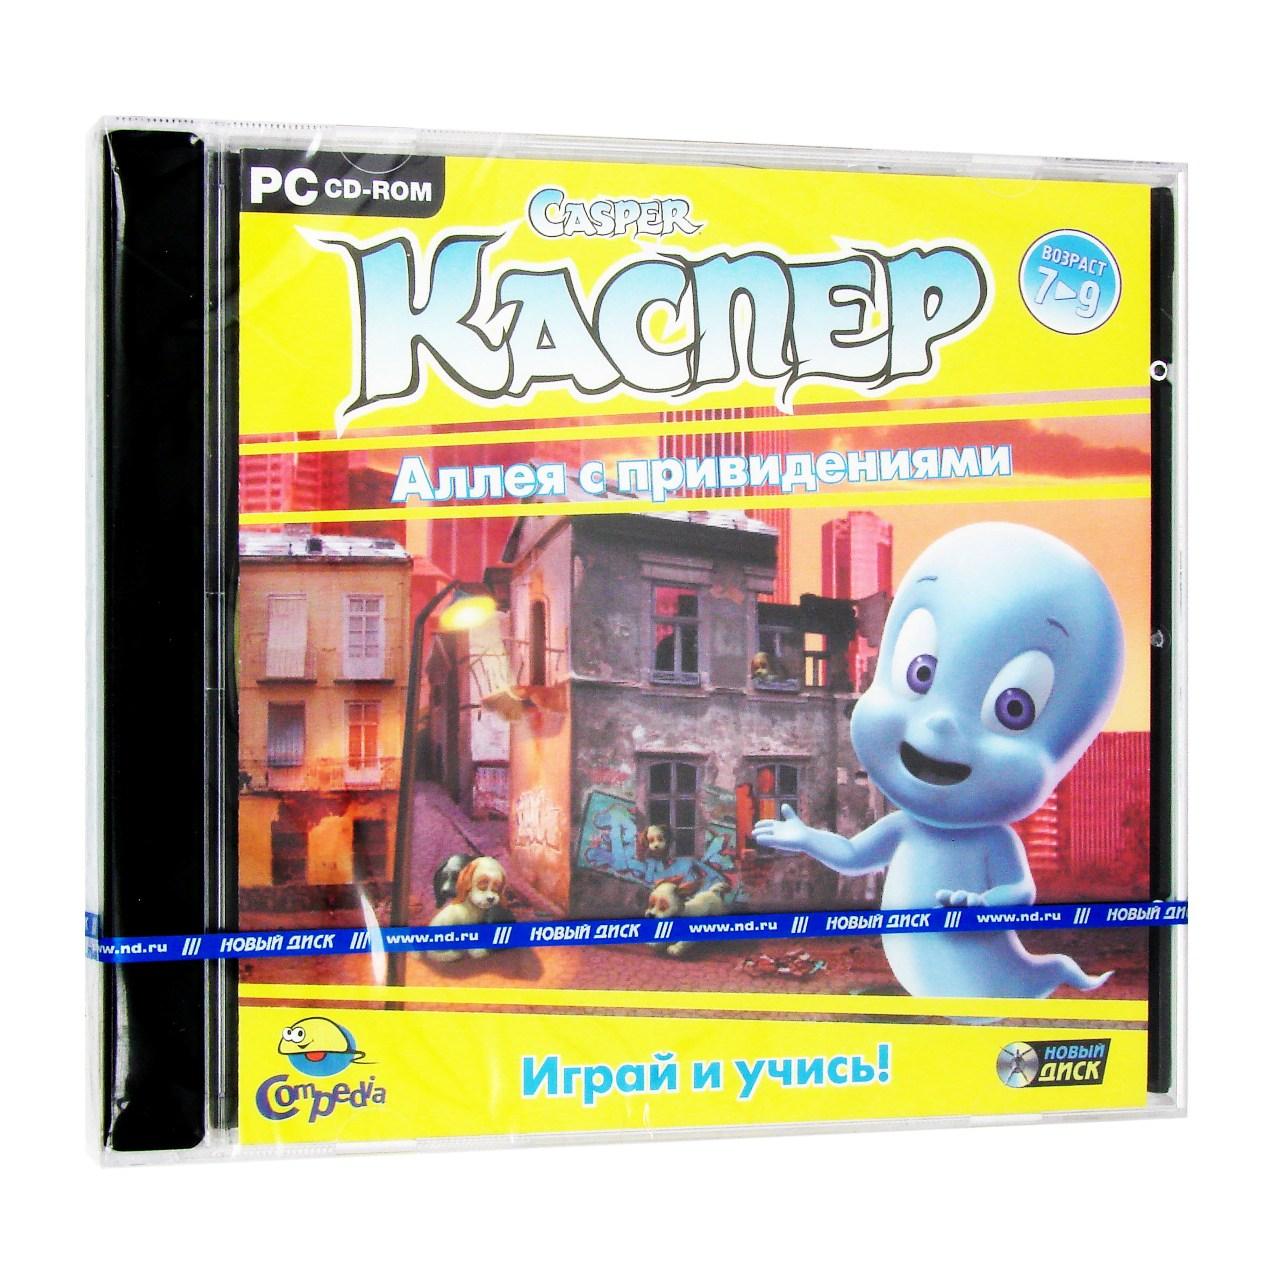 Компьютерный компакт-диск Каспер. Аллея с привидениями (ПК), фирма "Новый диск", 1CD